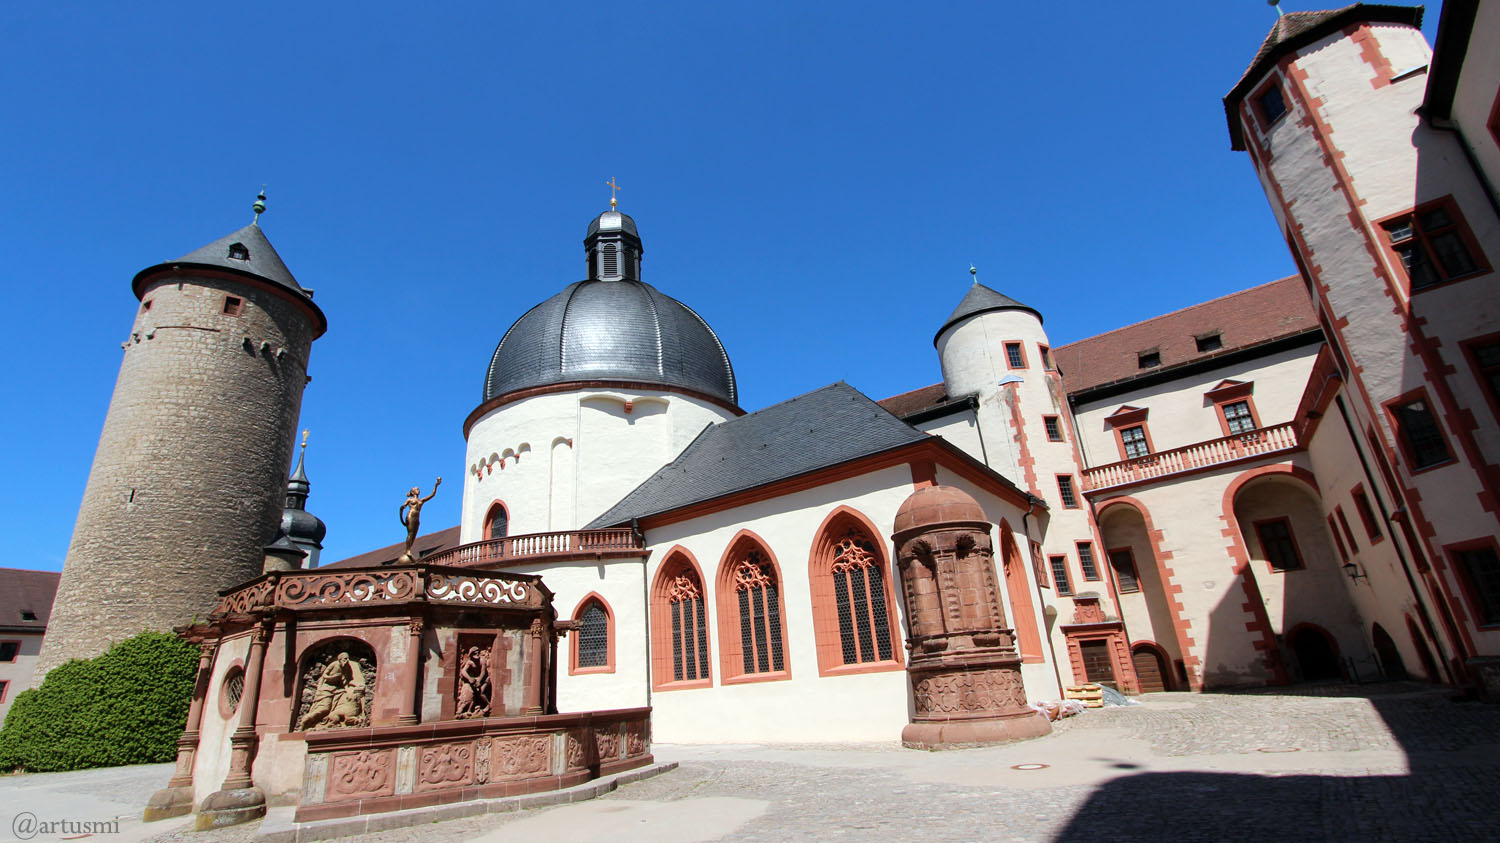 Menschenleerer Burghof der Festung Marienberg in Würzburg am 18. Mai 2020